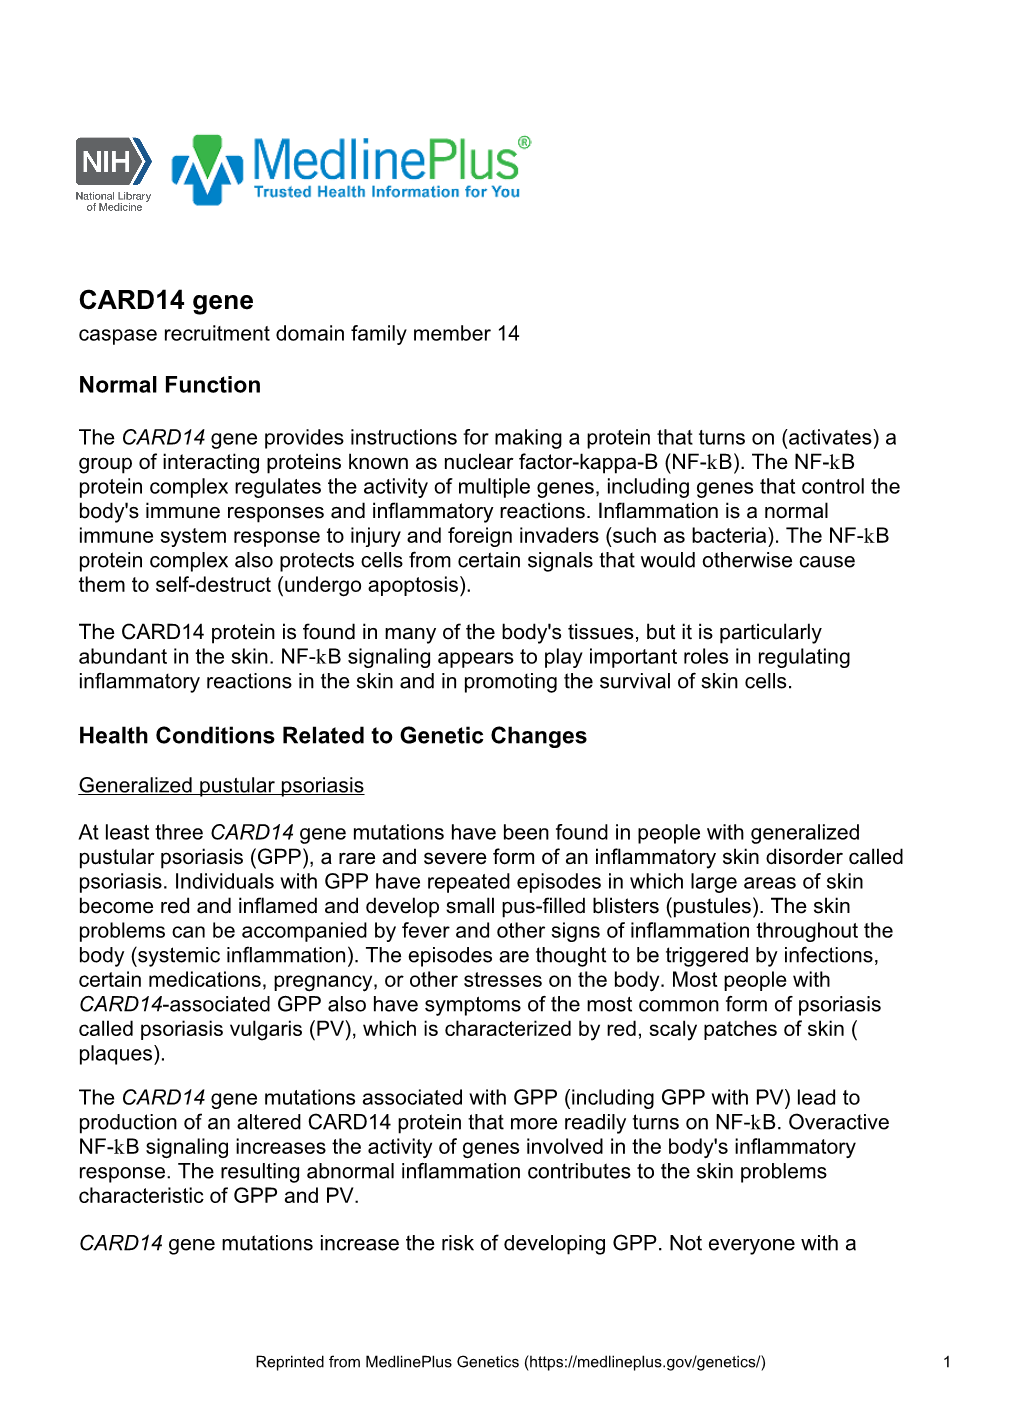 CARD14 Gene Caspase Recruitment Domain Family Member 14